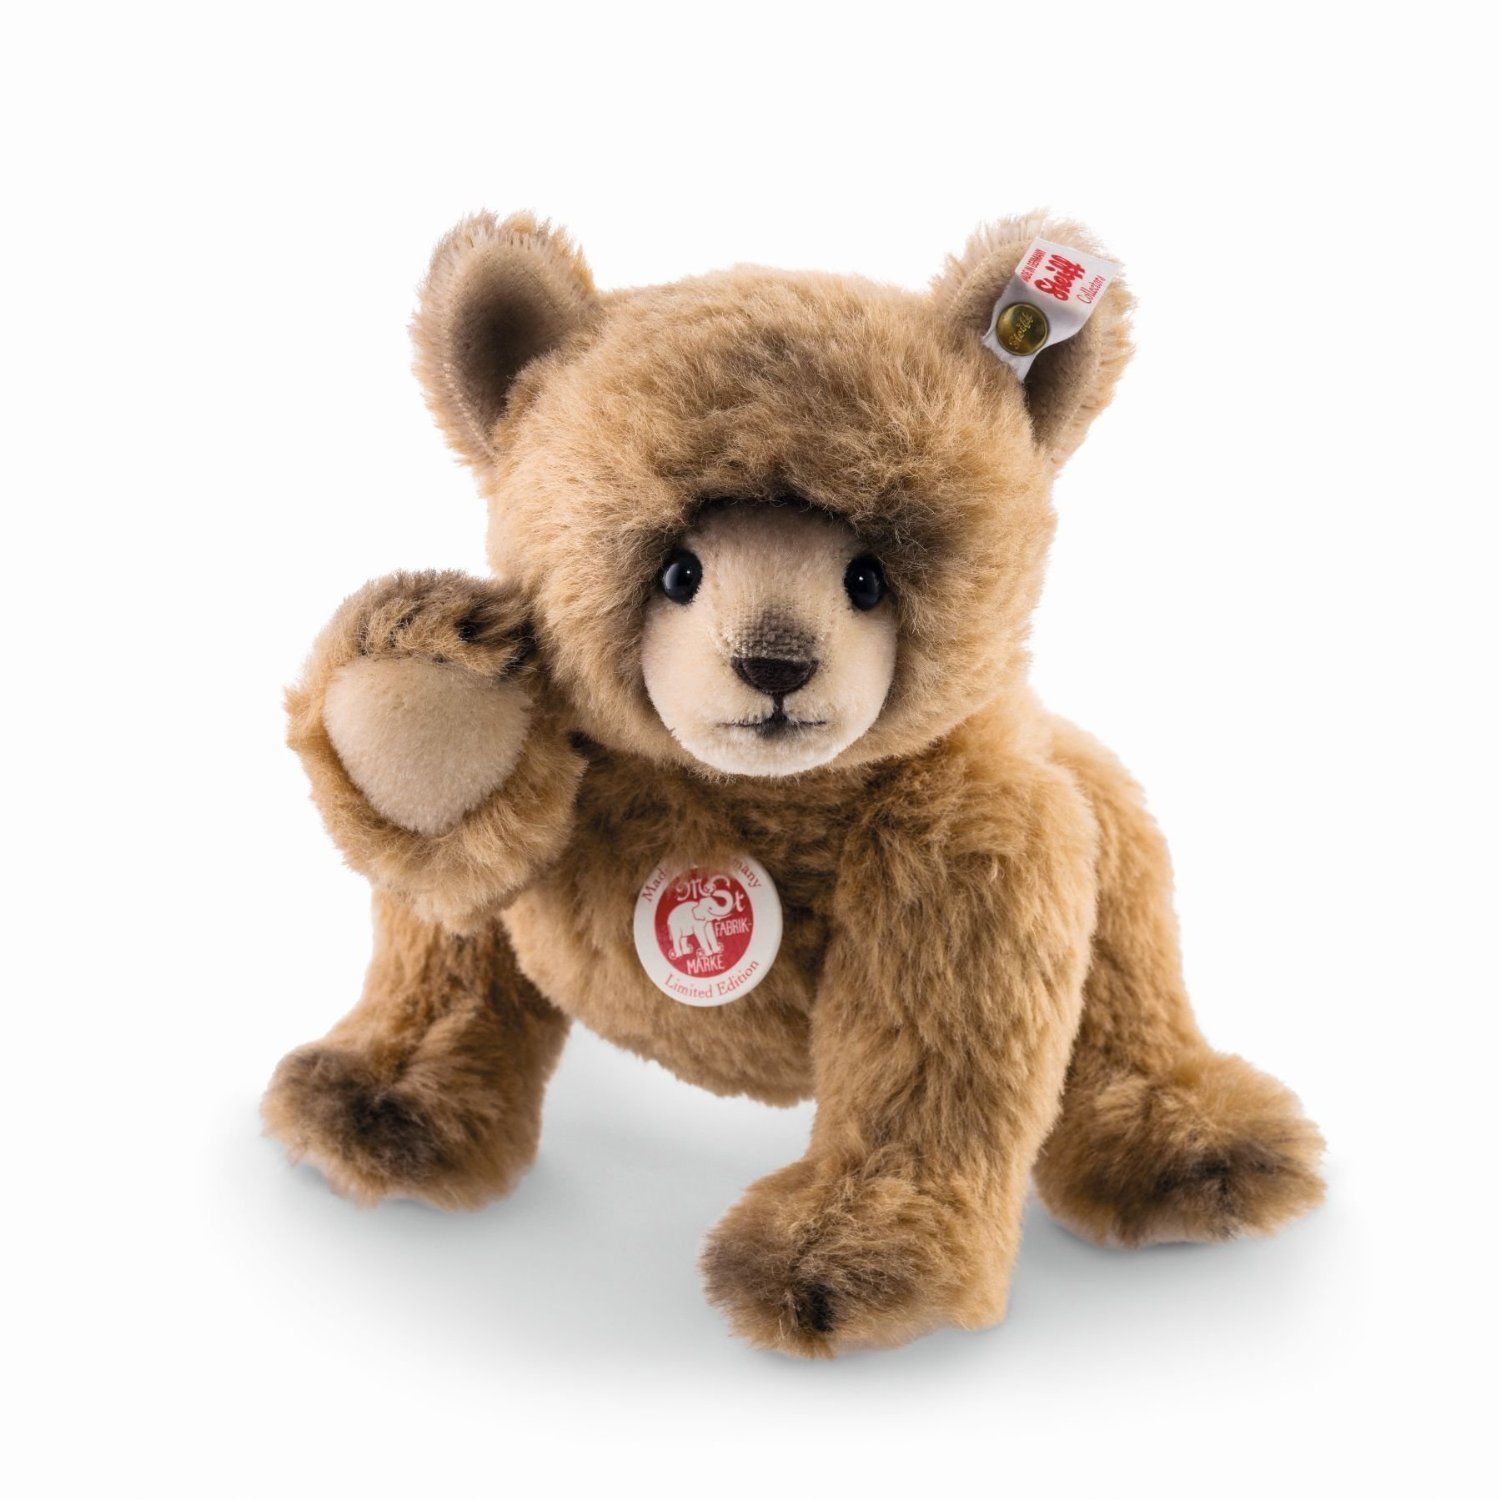 Steiff Nodding Teddy Bear EAN 021466 Worldwide Limited Edition | eBay